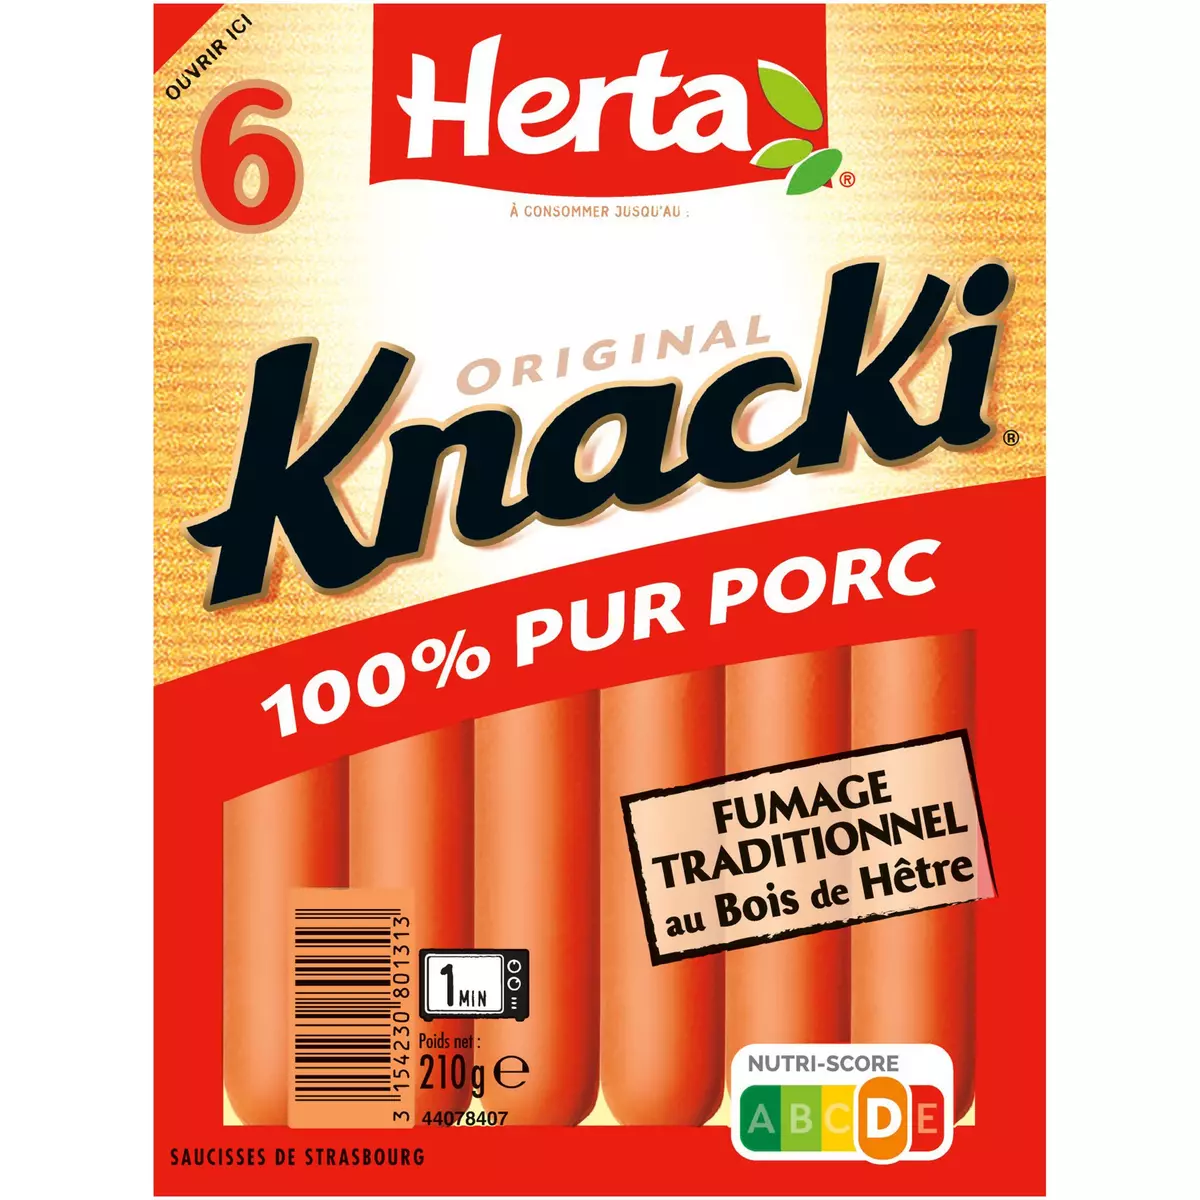 HERTA Knacki 100% pur porc fumage traditionnel au bois de hêtre 6 pièces 210g